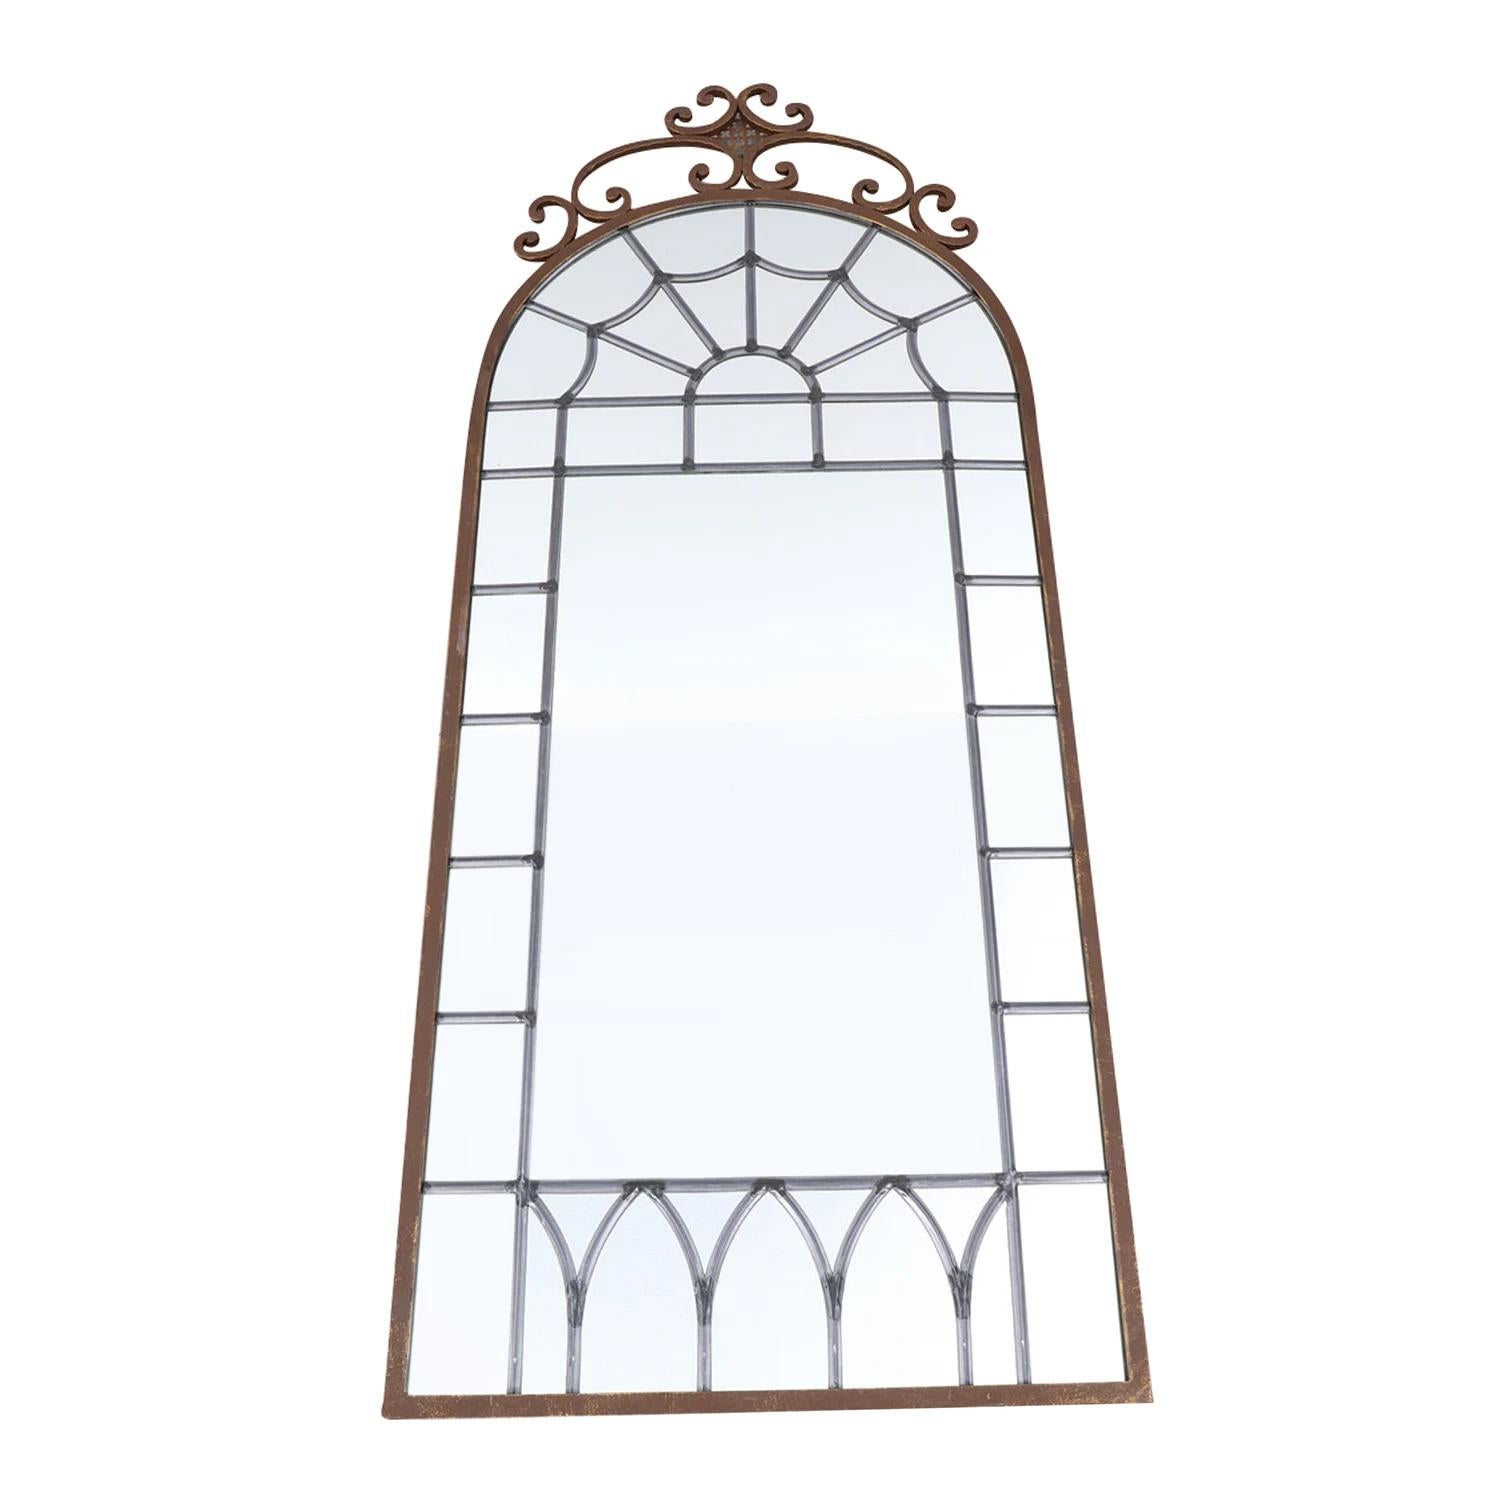 Ein antikes französisches Paar Wandspiegel mit gewölbtem Oberteil, aus handgefertigtem Metall in gutem Zustand. Der große Spiegel besteht aus seinem originalen verspiegelten Bleiglas, das durch eine detaillierte Blumenverzierung verziert ist. Die